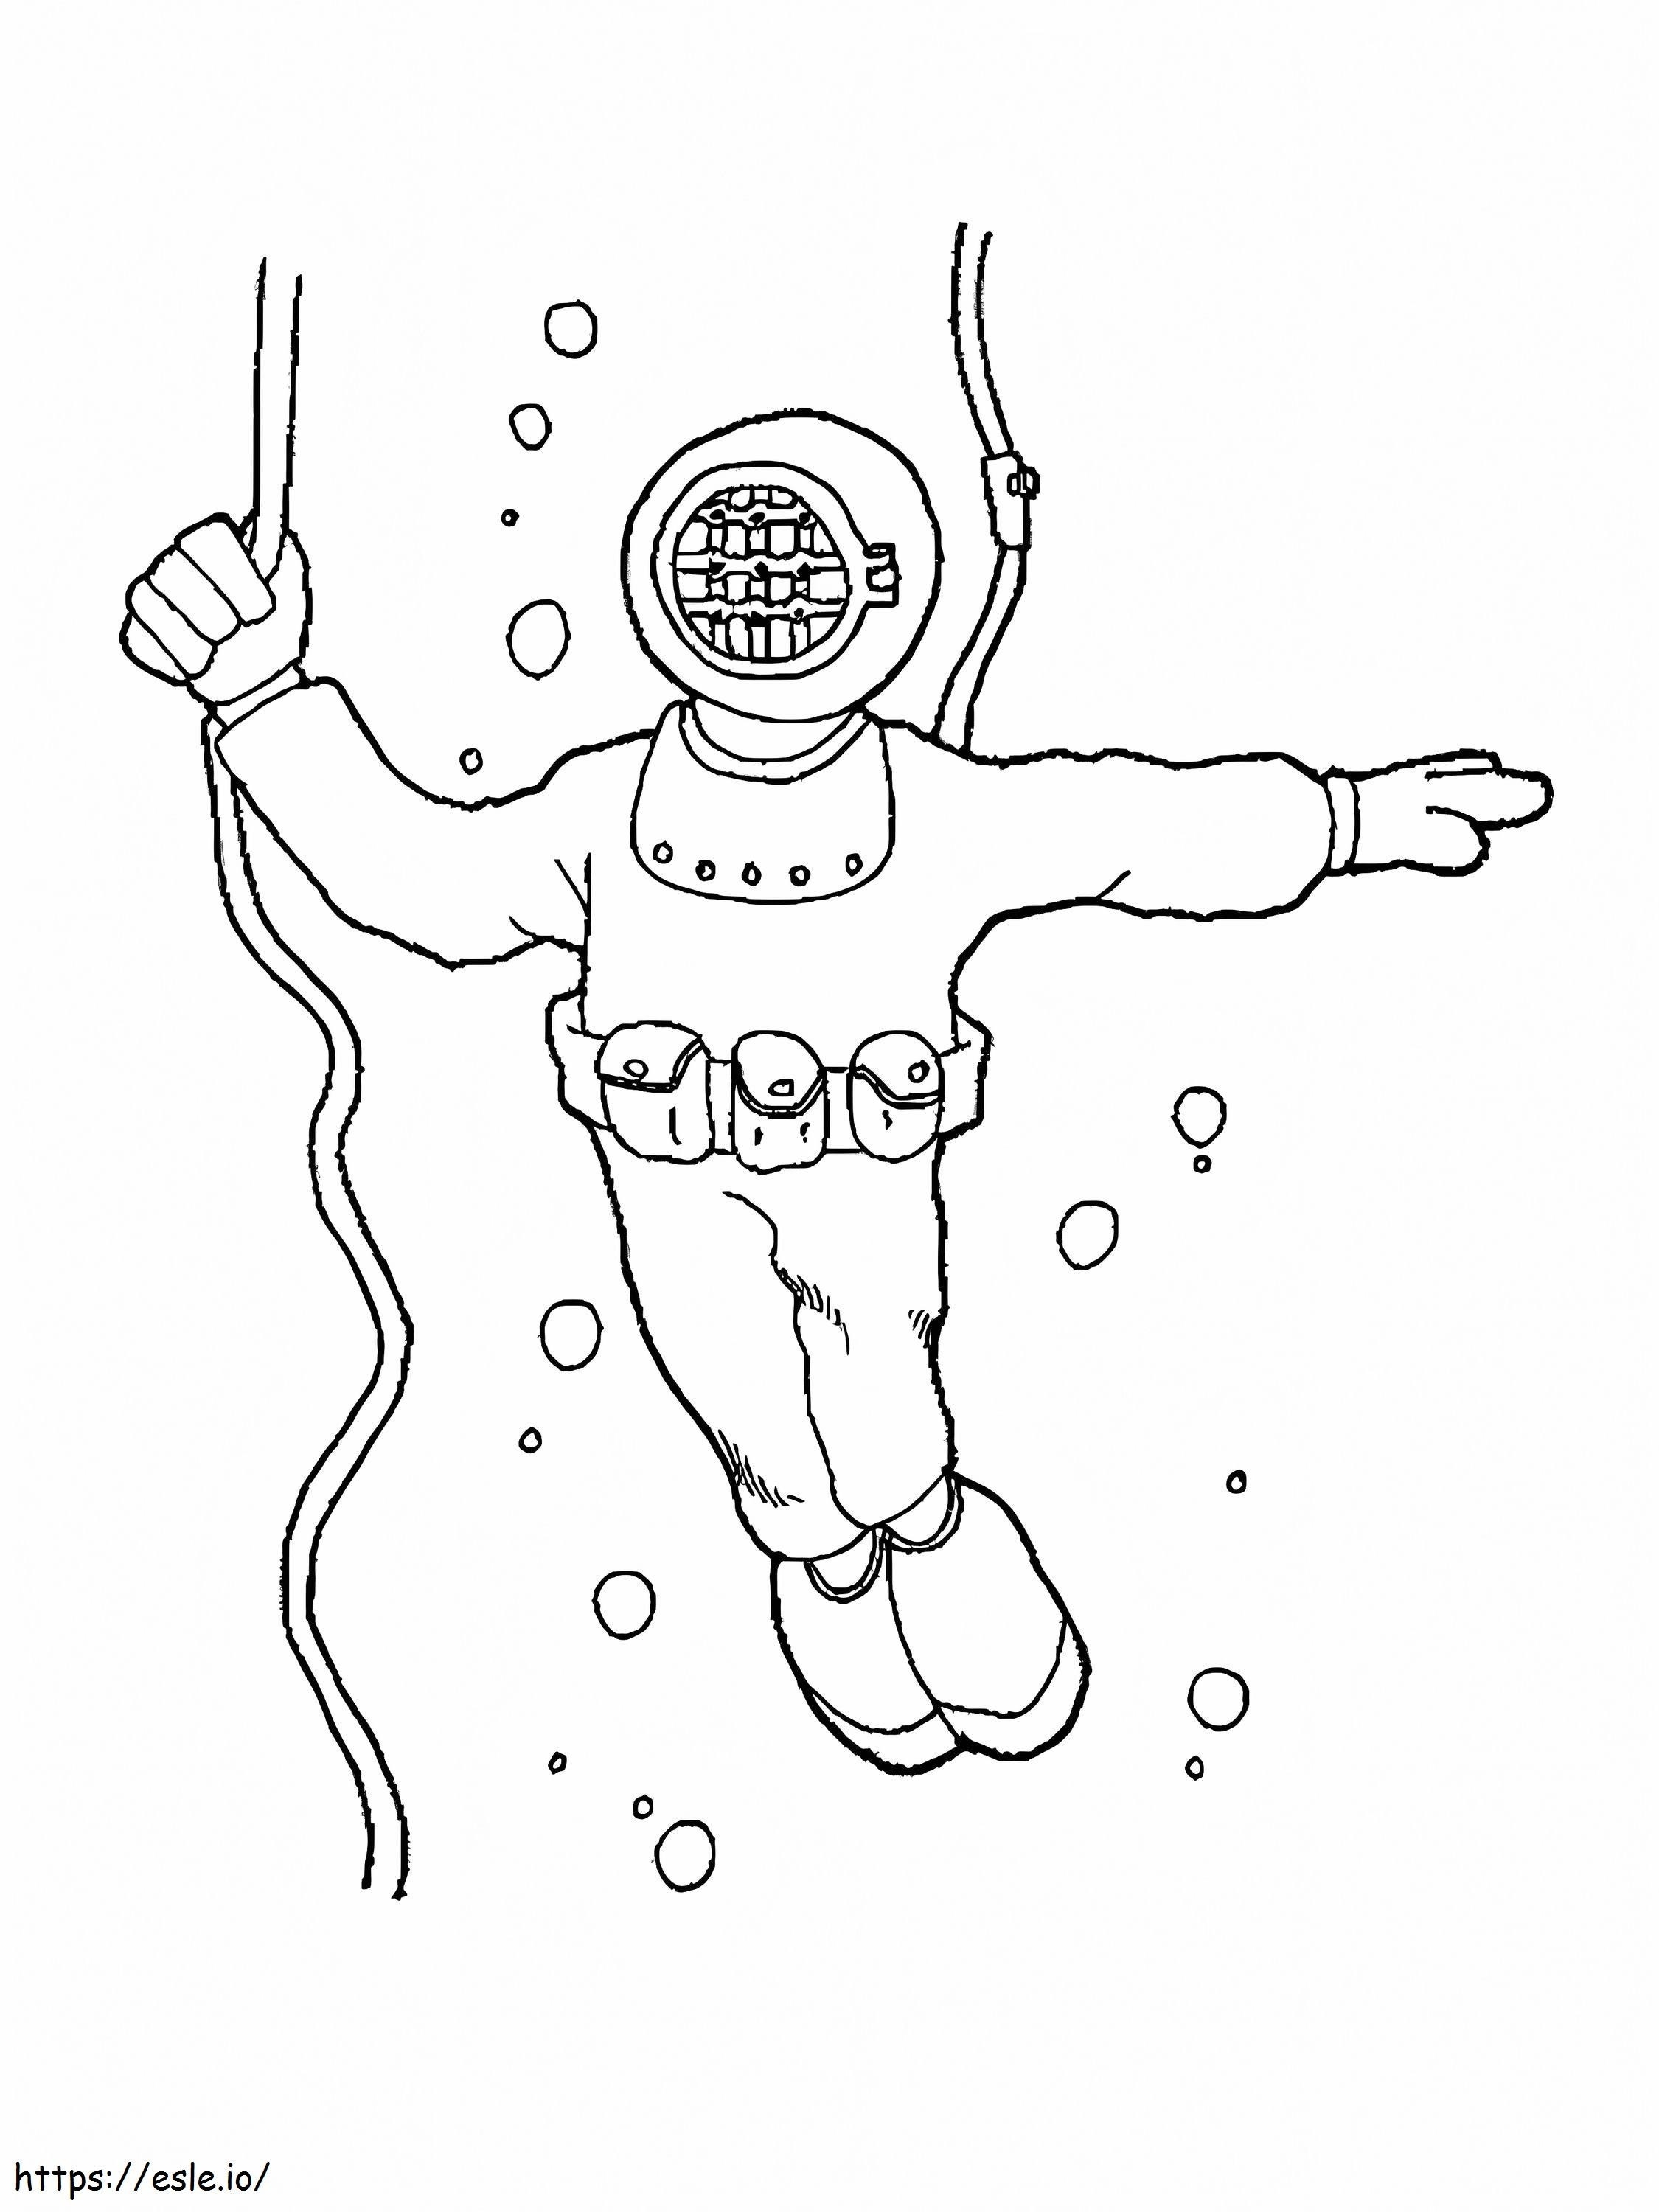 Scuba Diver coloring page